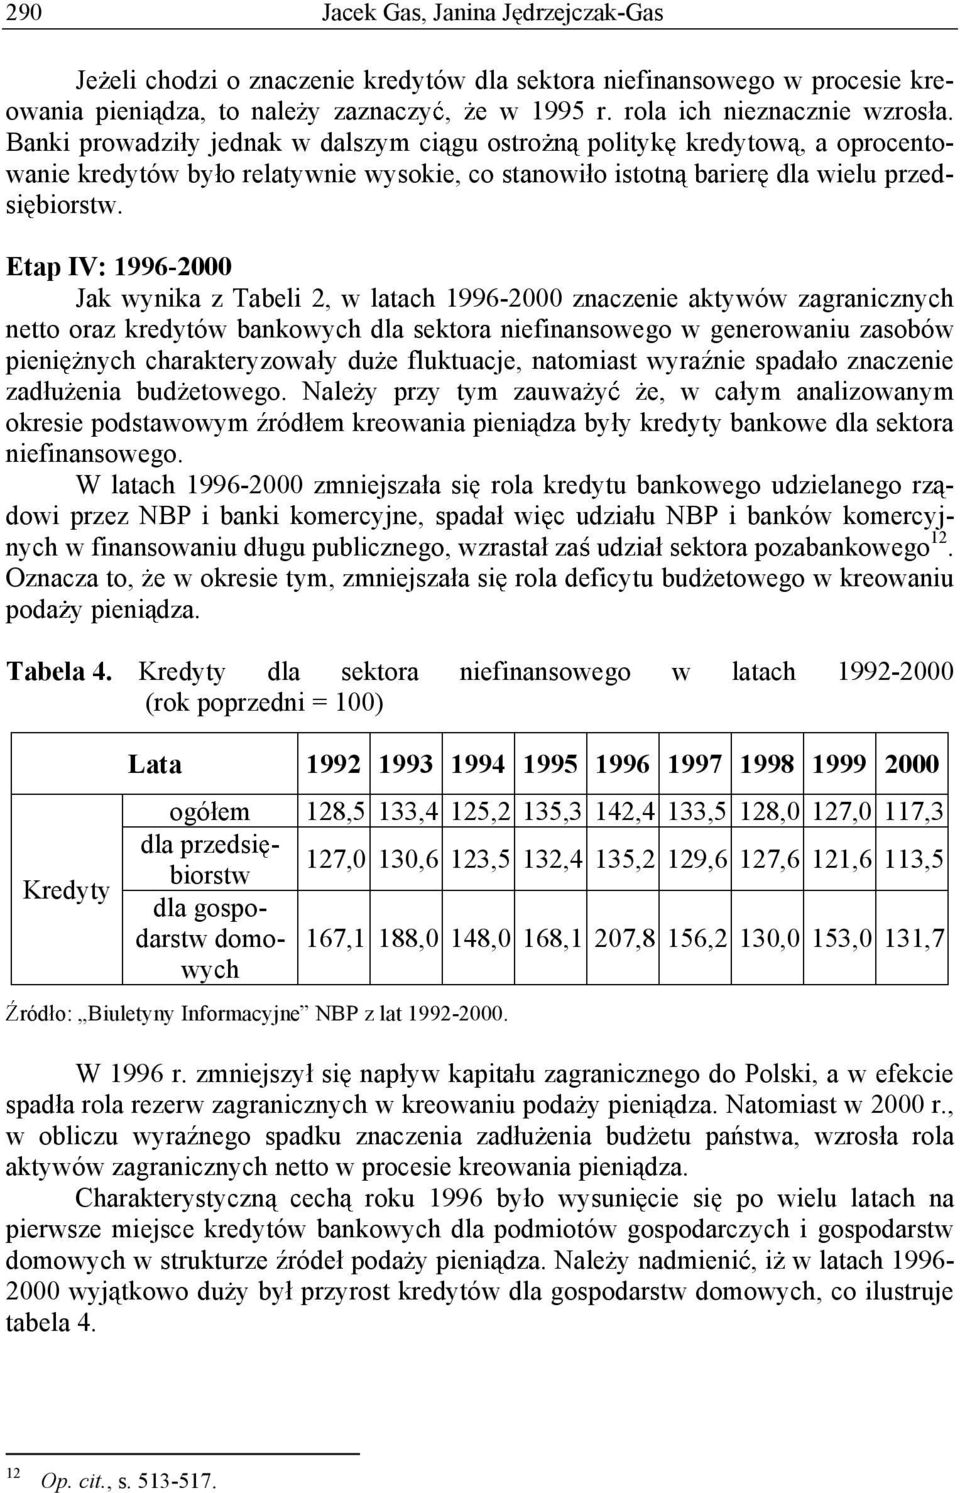 Etap IV: 1996-2000 Jak wynika z Tabeli 2, w latach 1996-2000 znaczenie aktywów zagranicznych netto oraz kredytów bankowych dla sektora niefinansowego w generowaniu zasobów pieni nych charakteryzowa y